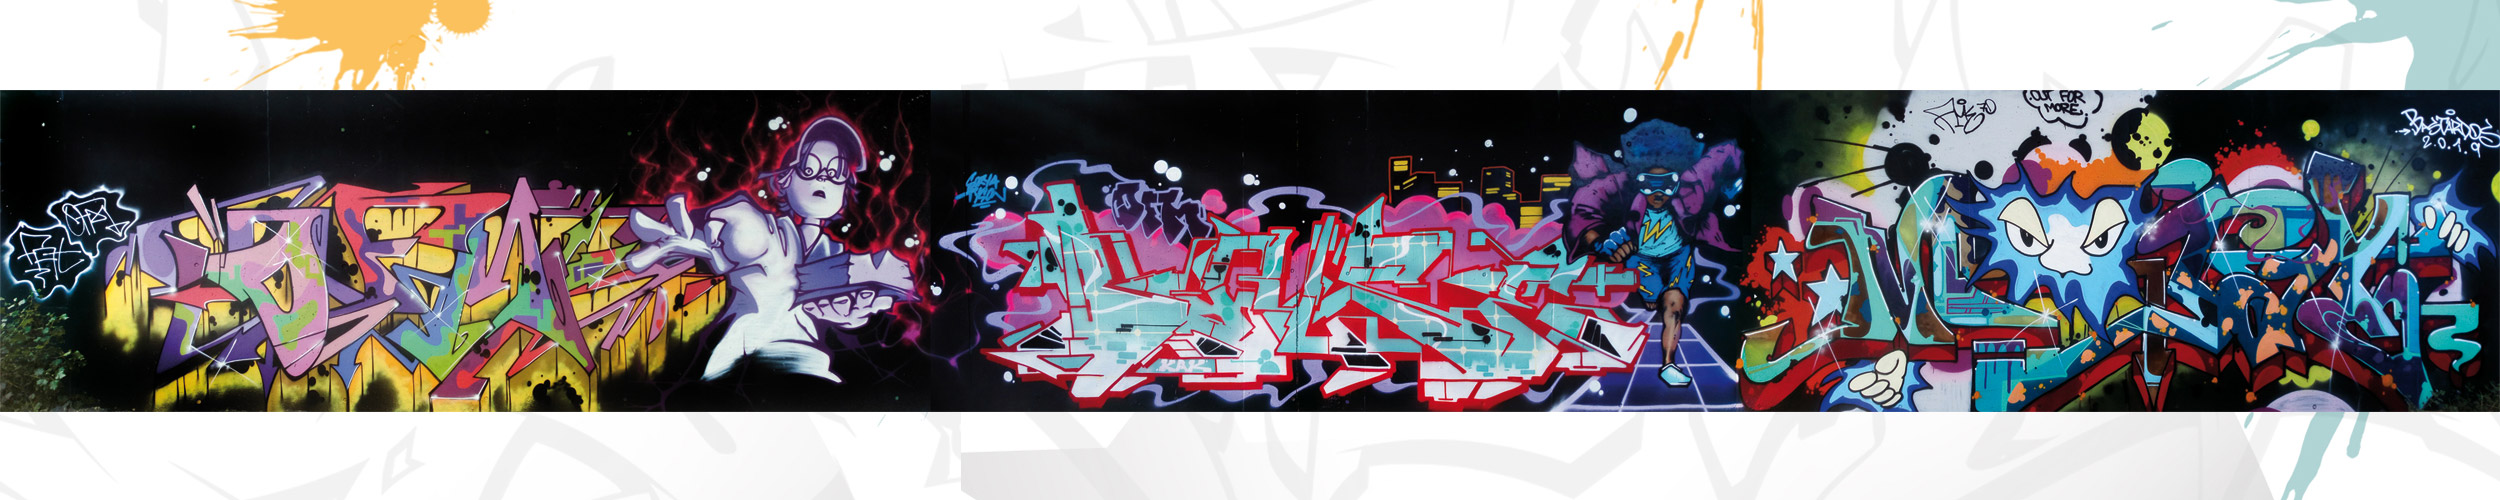 graffiti-fresque-collective